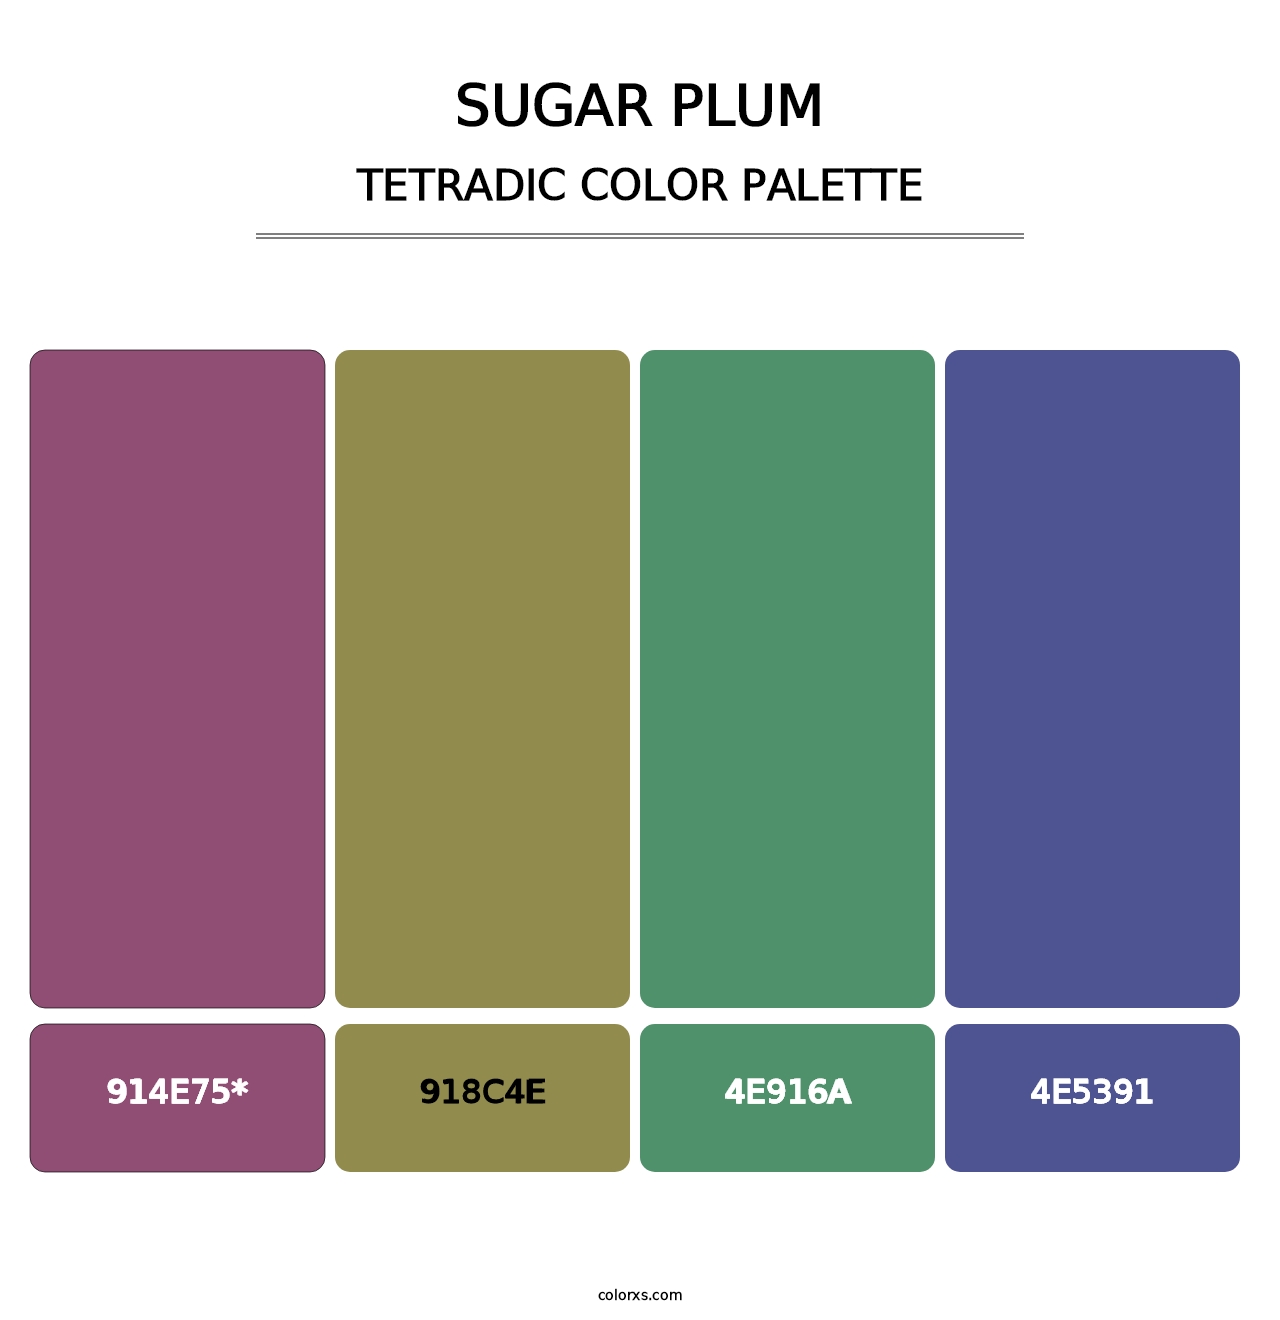 Sugar Plum - Tetradic Color Palette